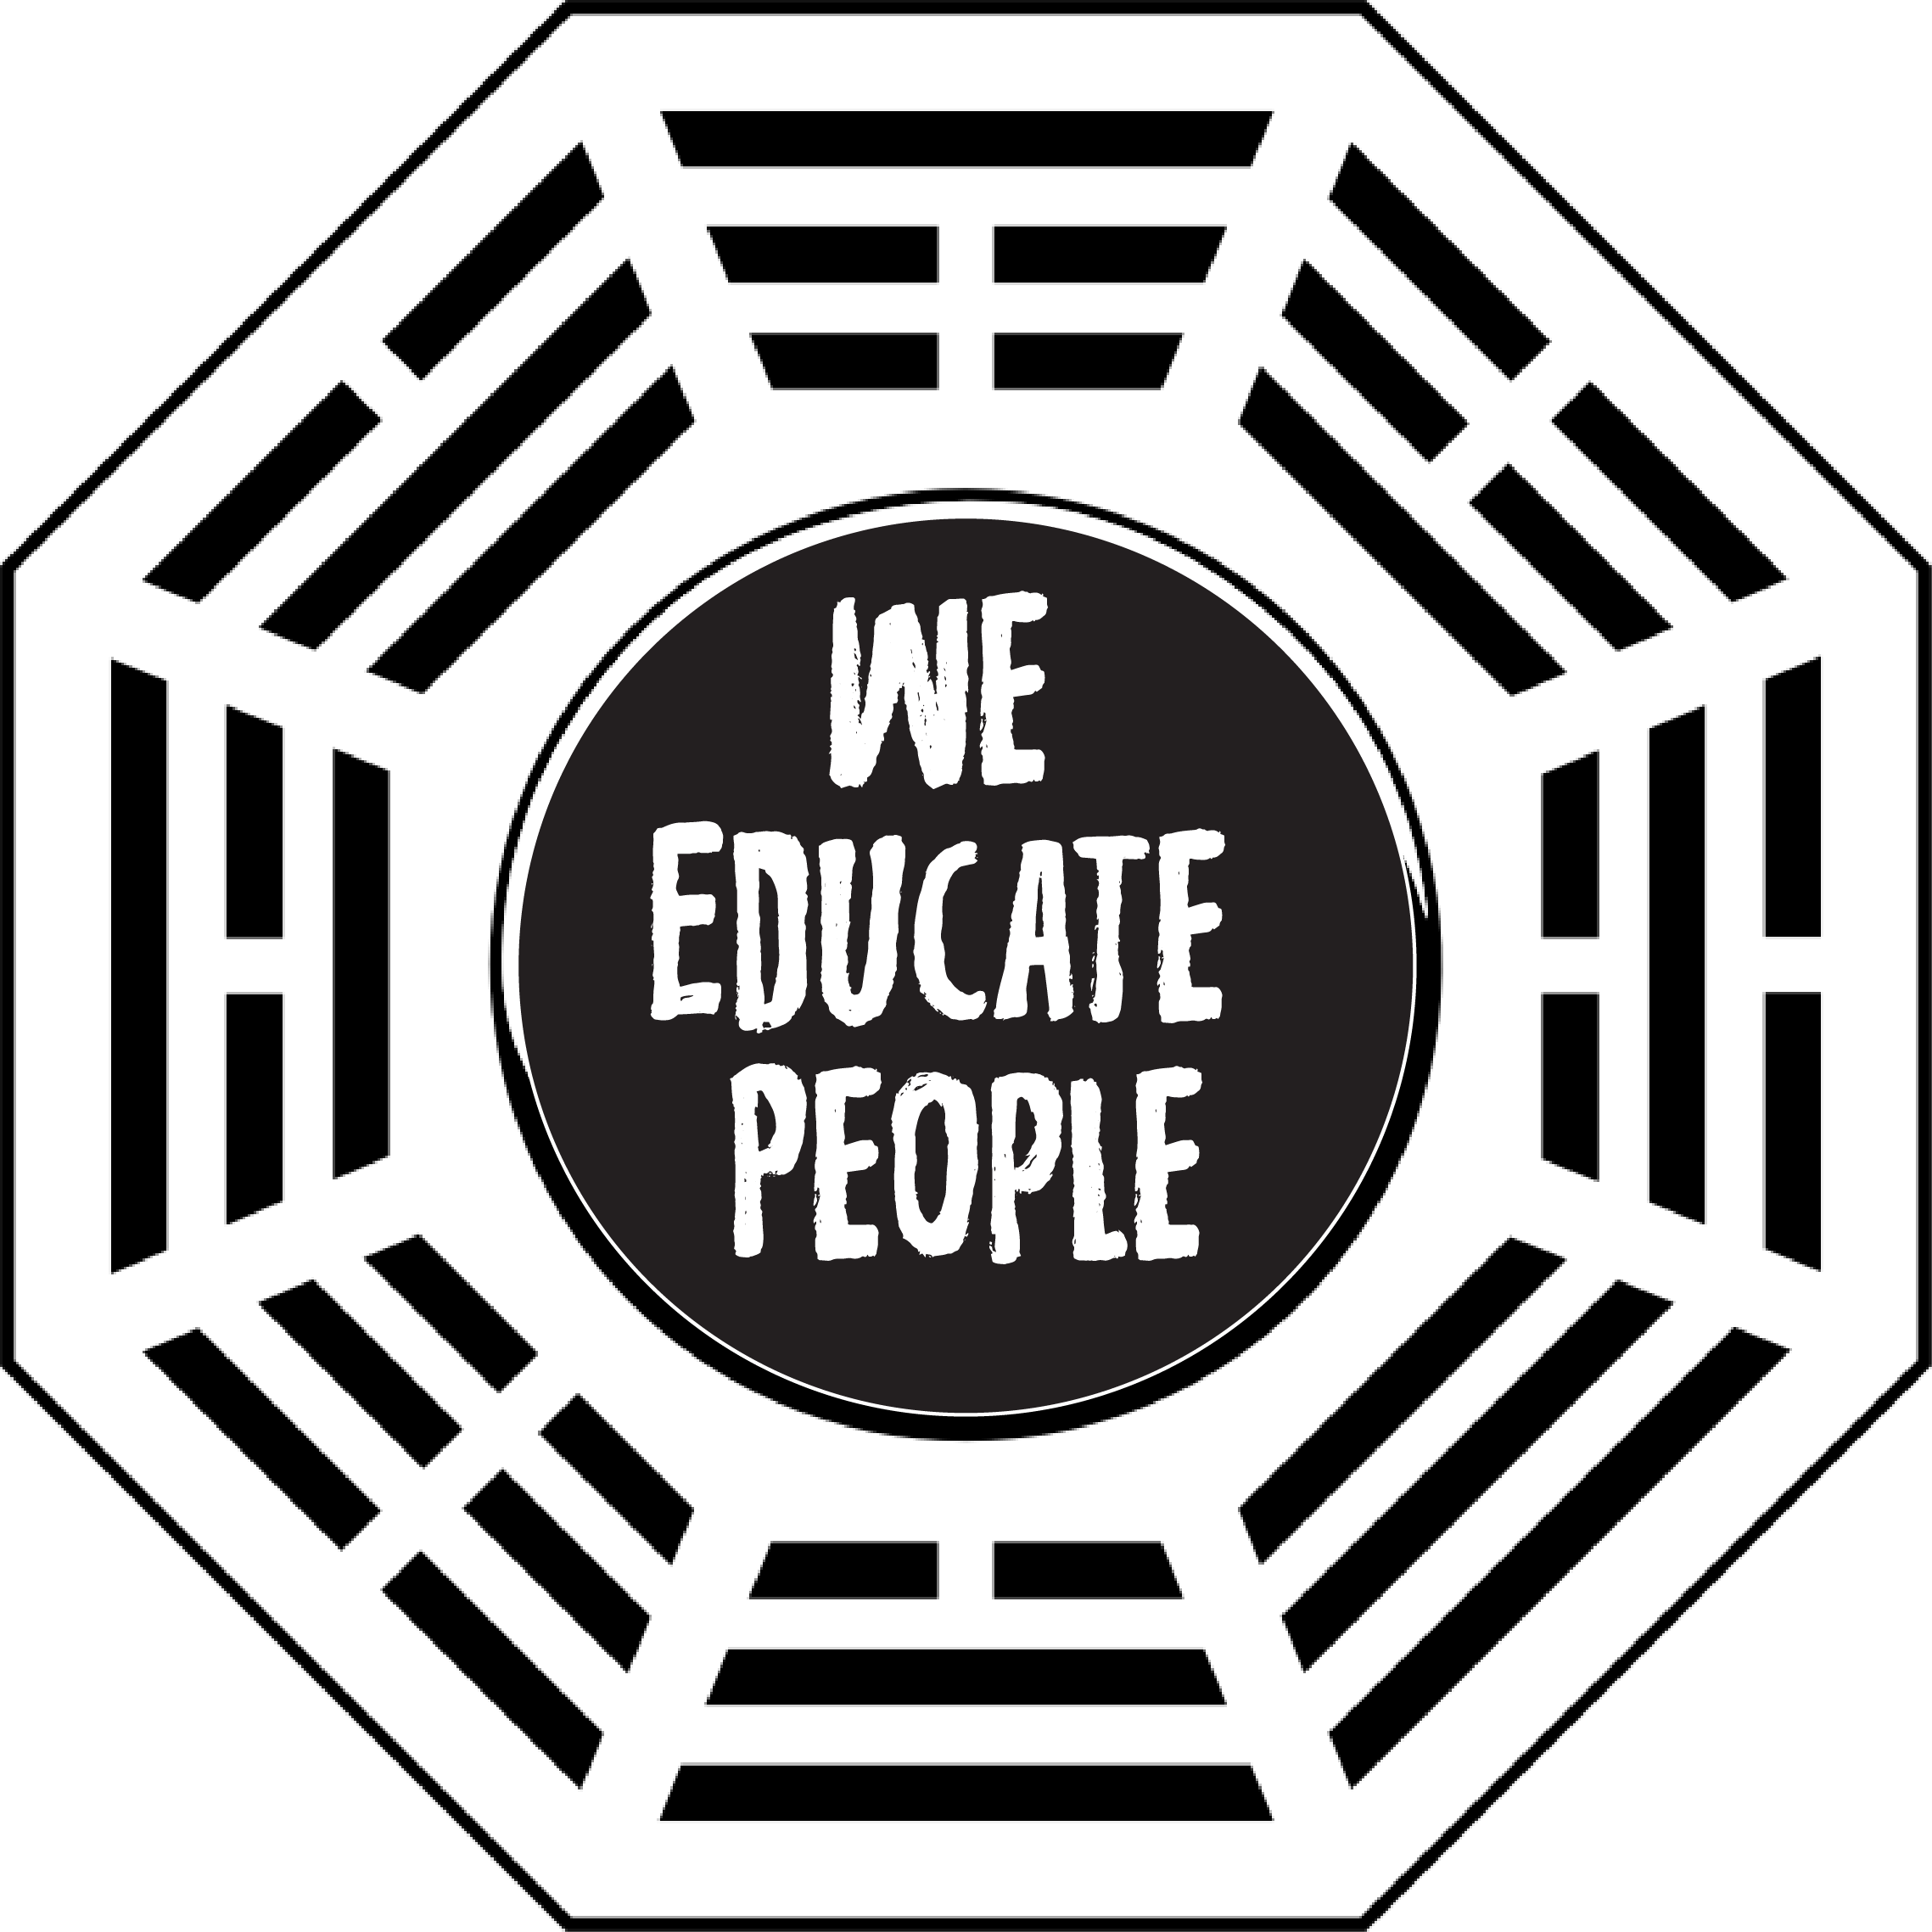 WE EDUCATE PEOPLE